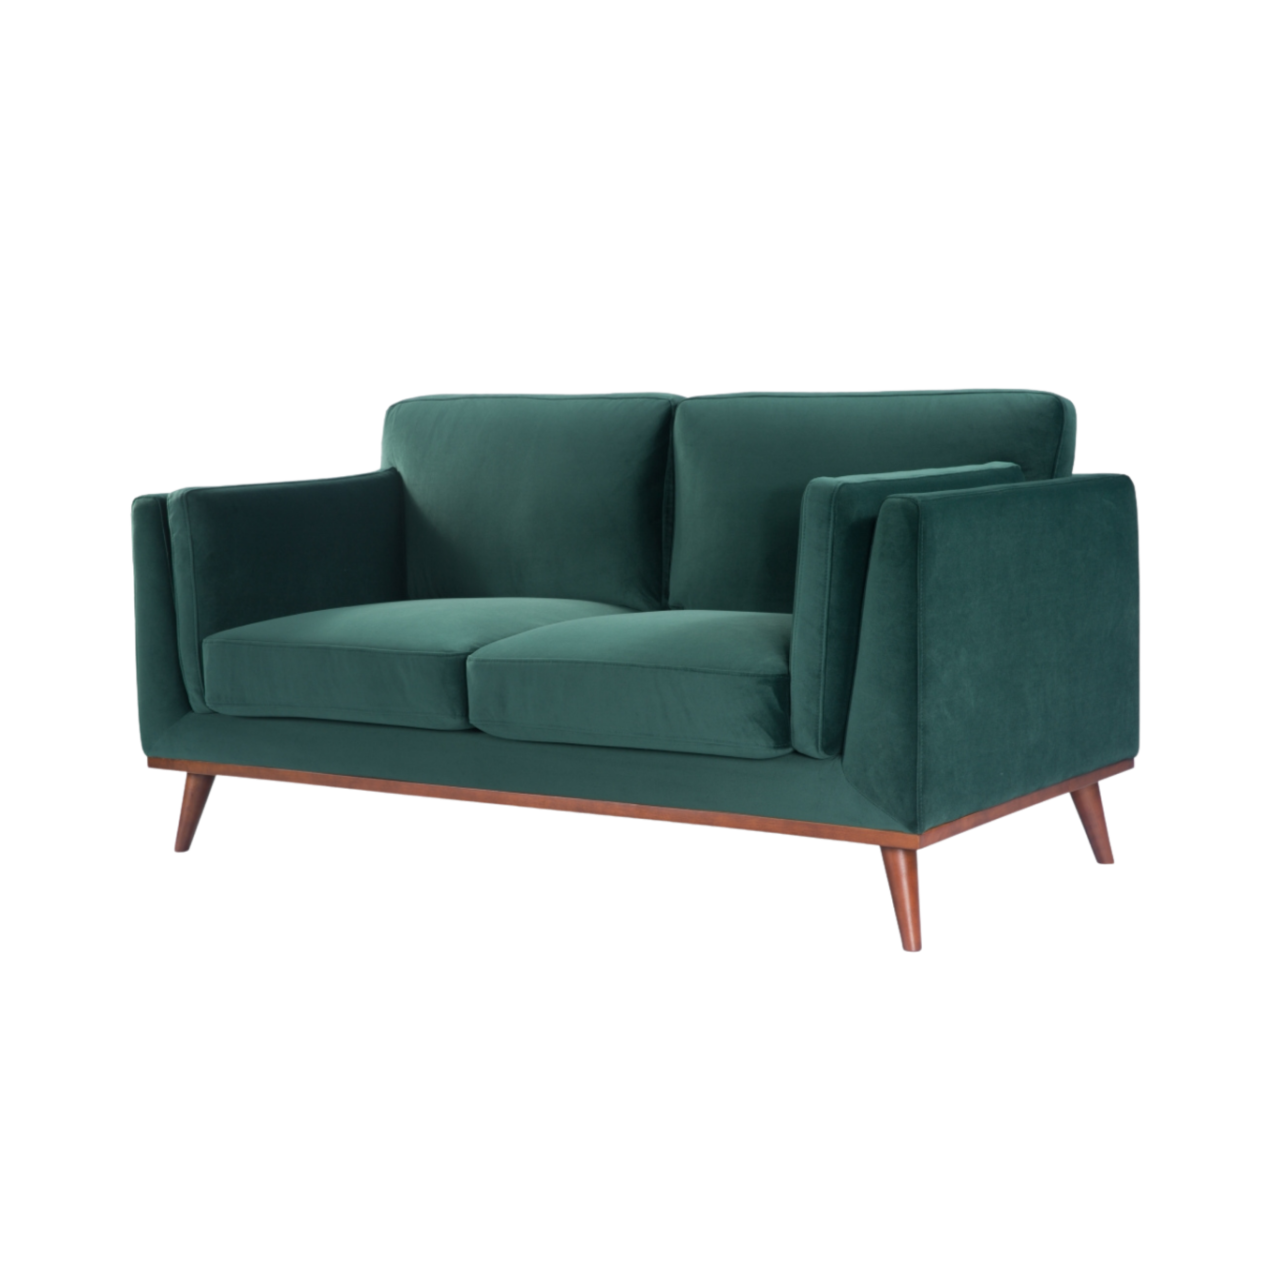 detail of Simple, modern shaped 2 seater sofa in emerald green velvet upholstery